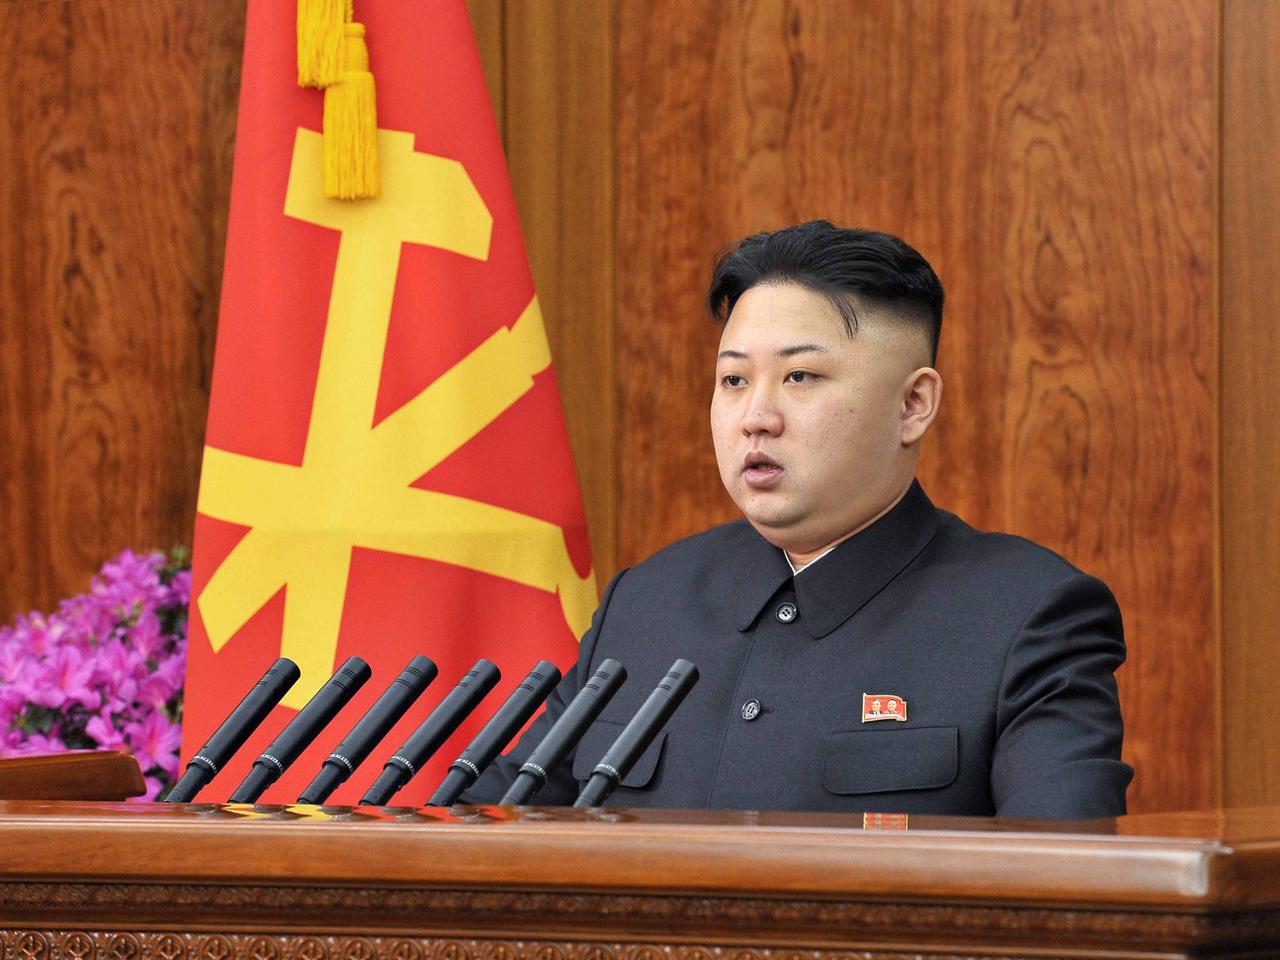 Nordkoreas Diktator Kim Jong Un während einer Rede.